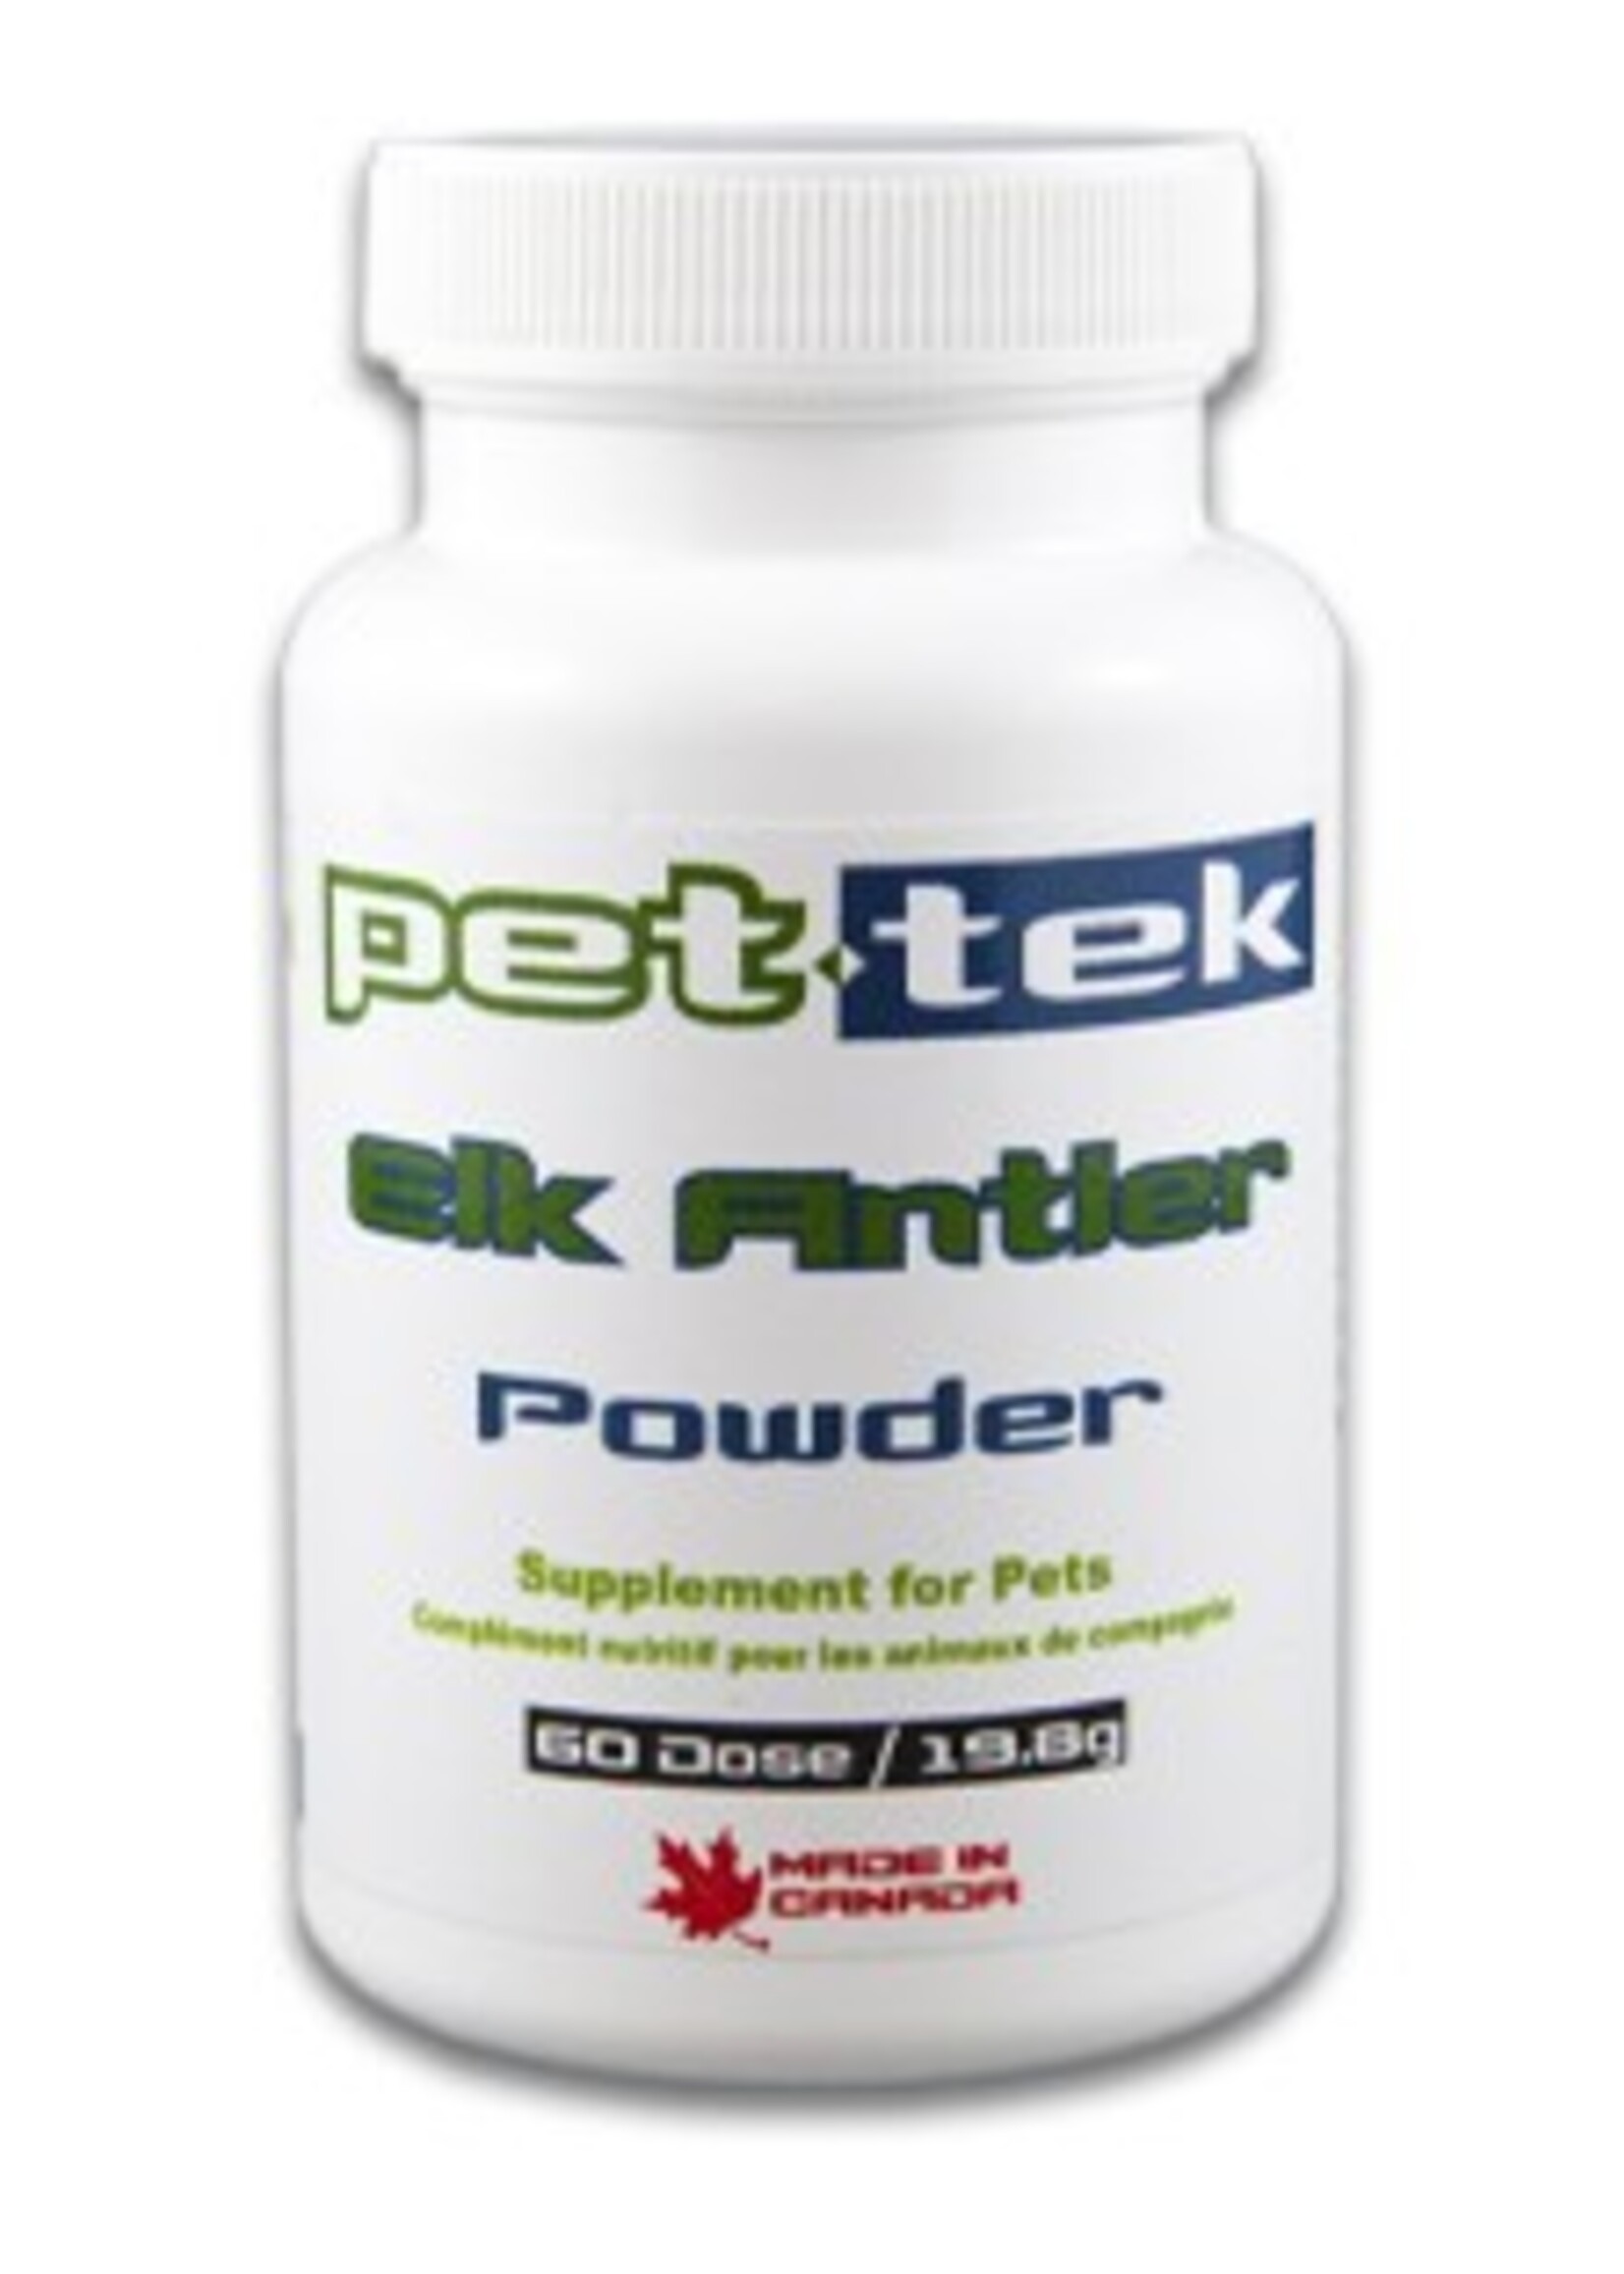 Pet-Tek Pet-Tek Elk Antler Powder 60 dose